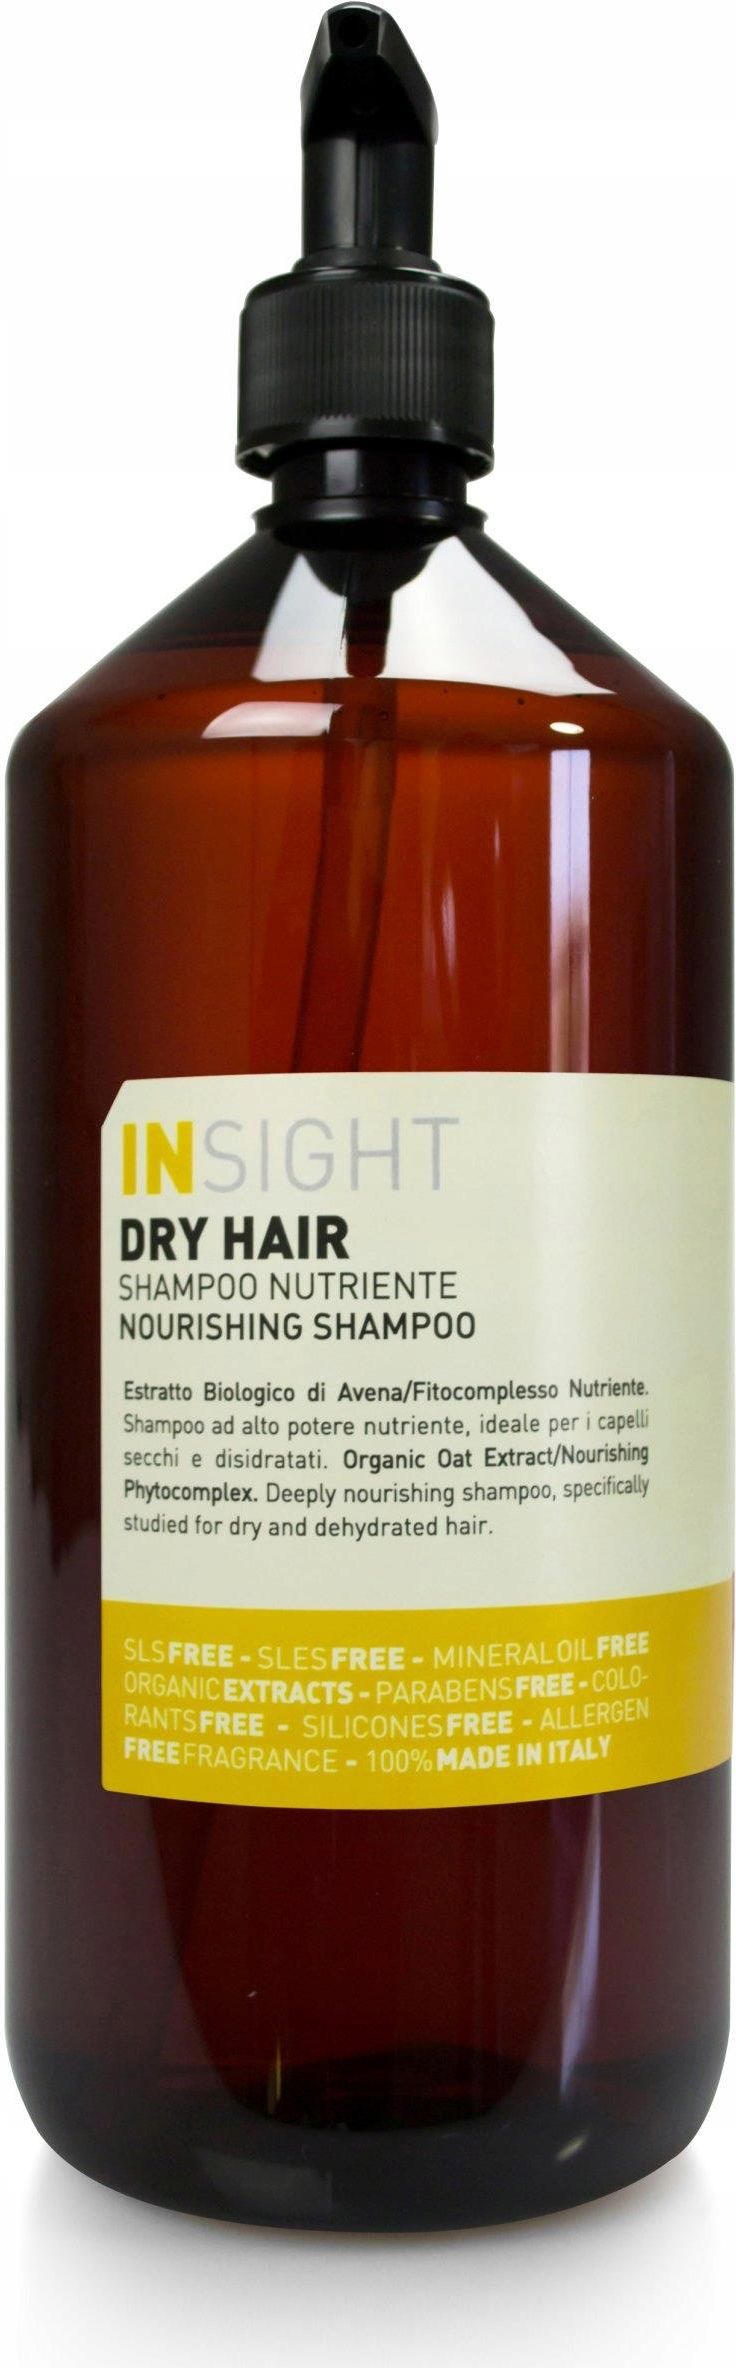 insight dry hair szampon do włosów zniszczonych opinie